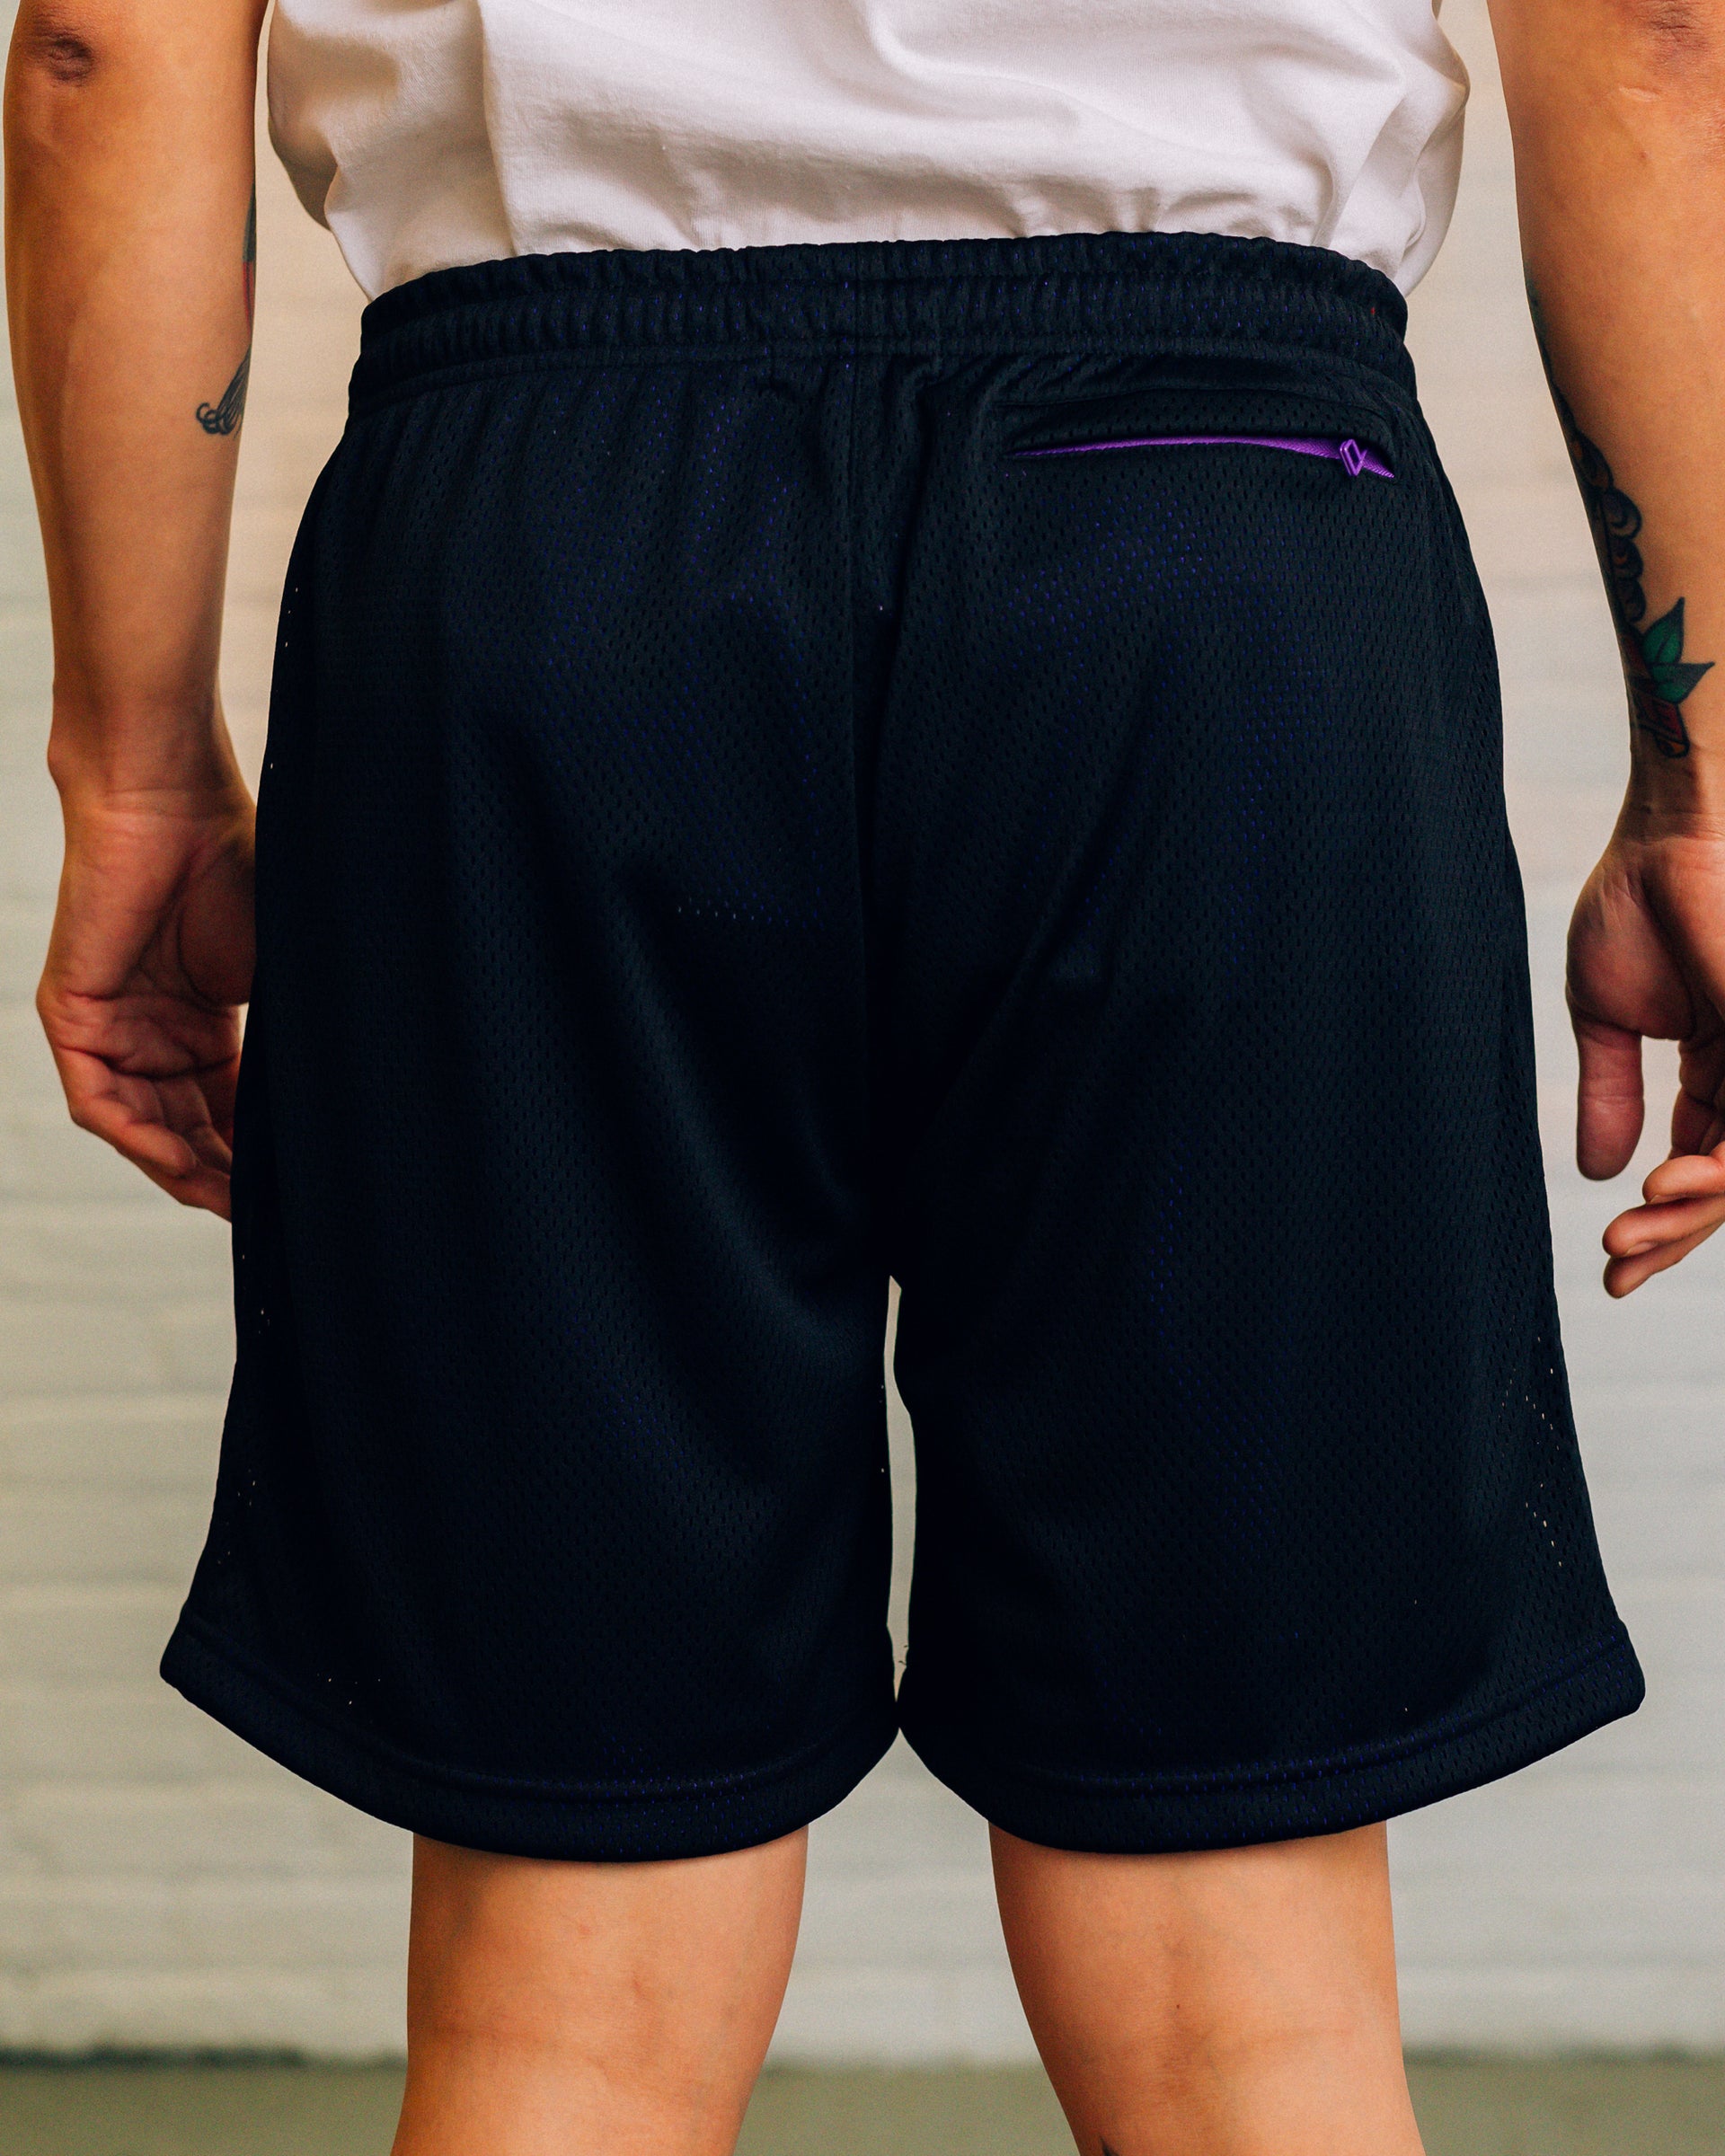 Two-Tone Mesh Shorts - Black/Purple